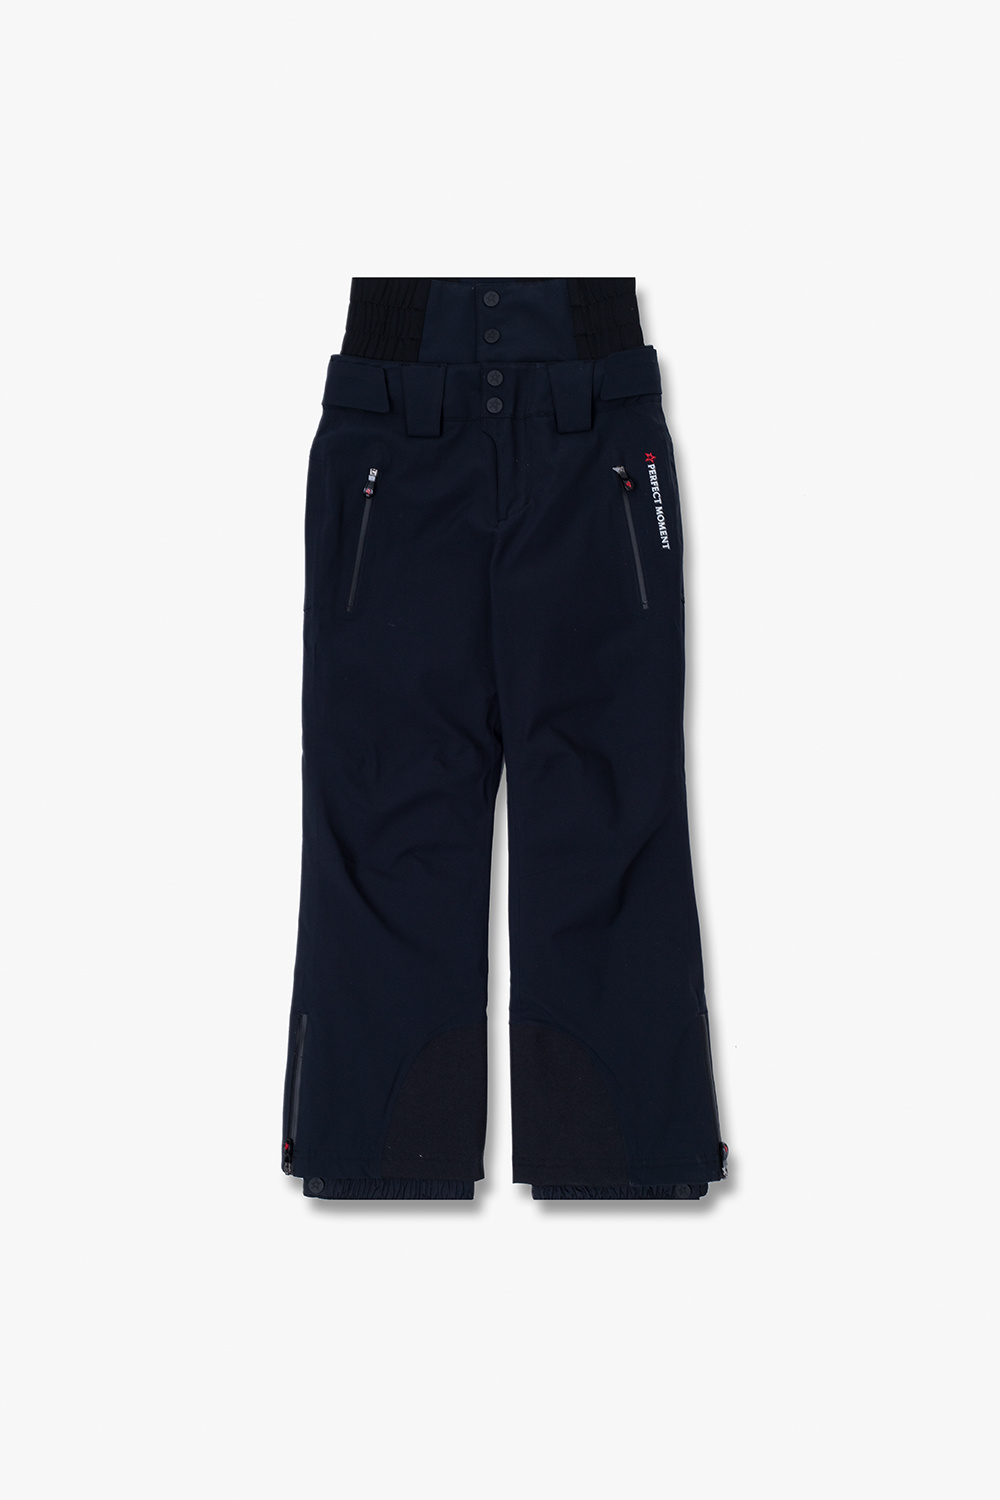 Perfect Moment Kids ‘Chamonix’ ski trousers